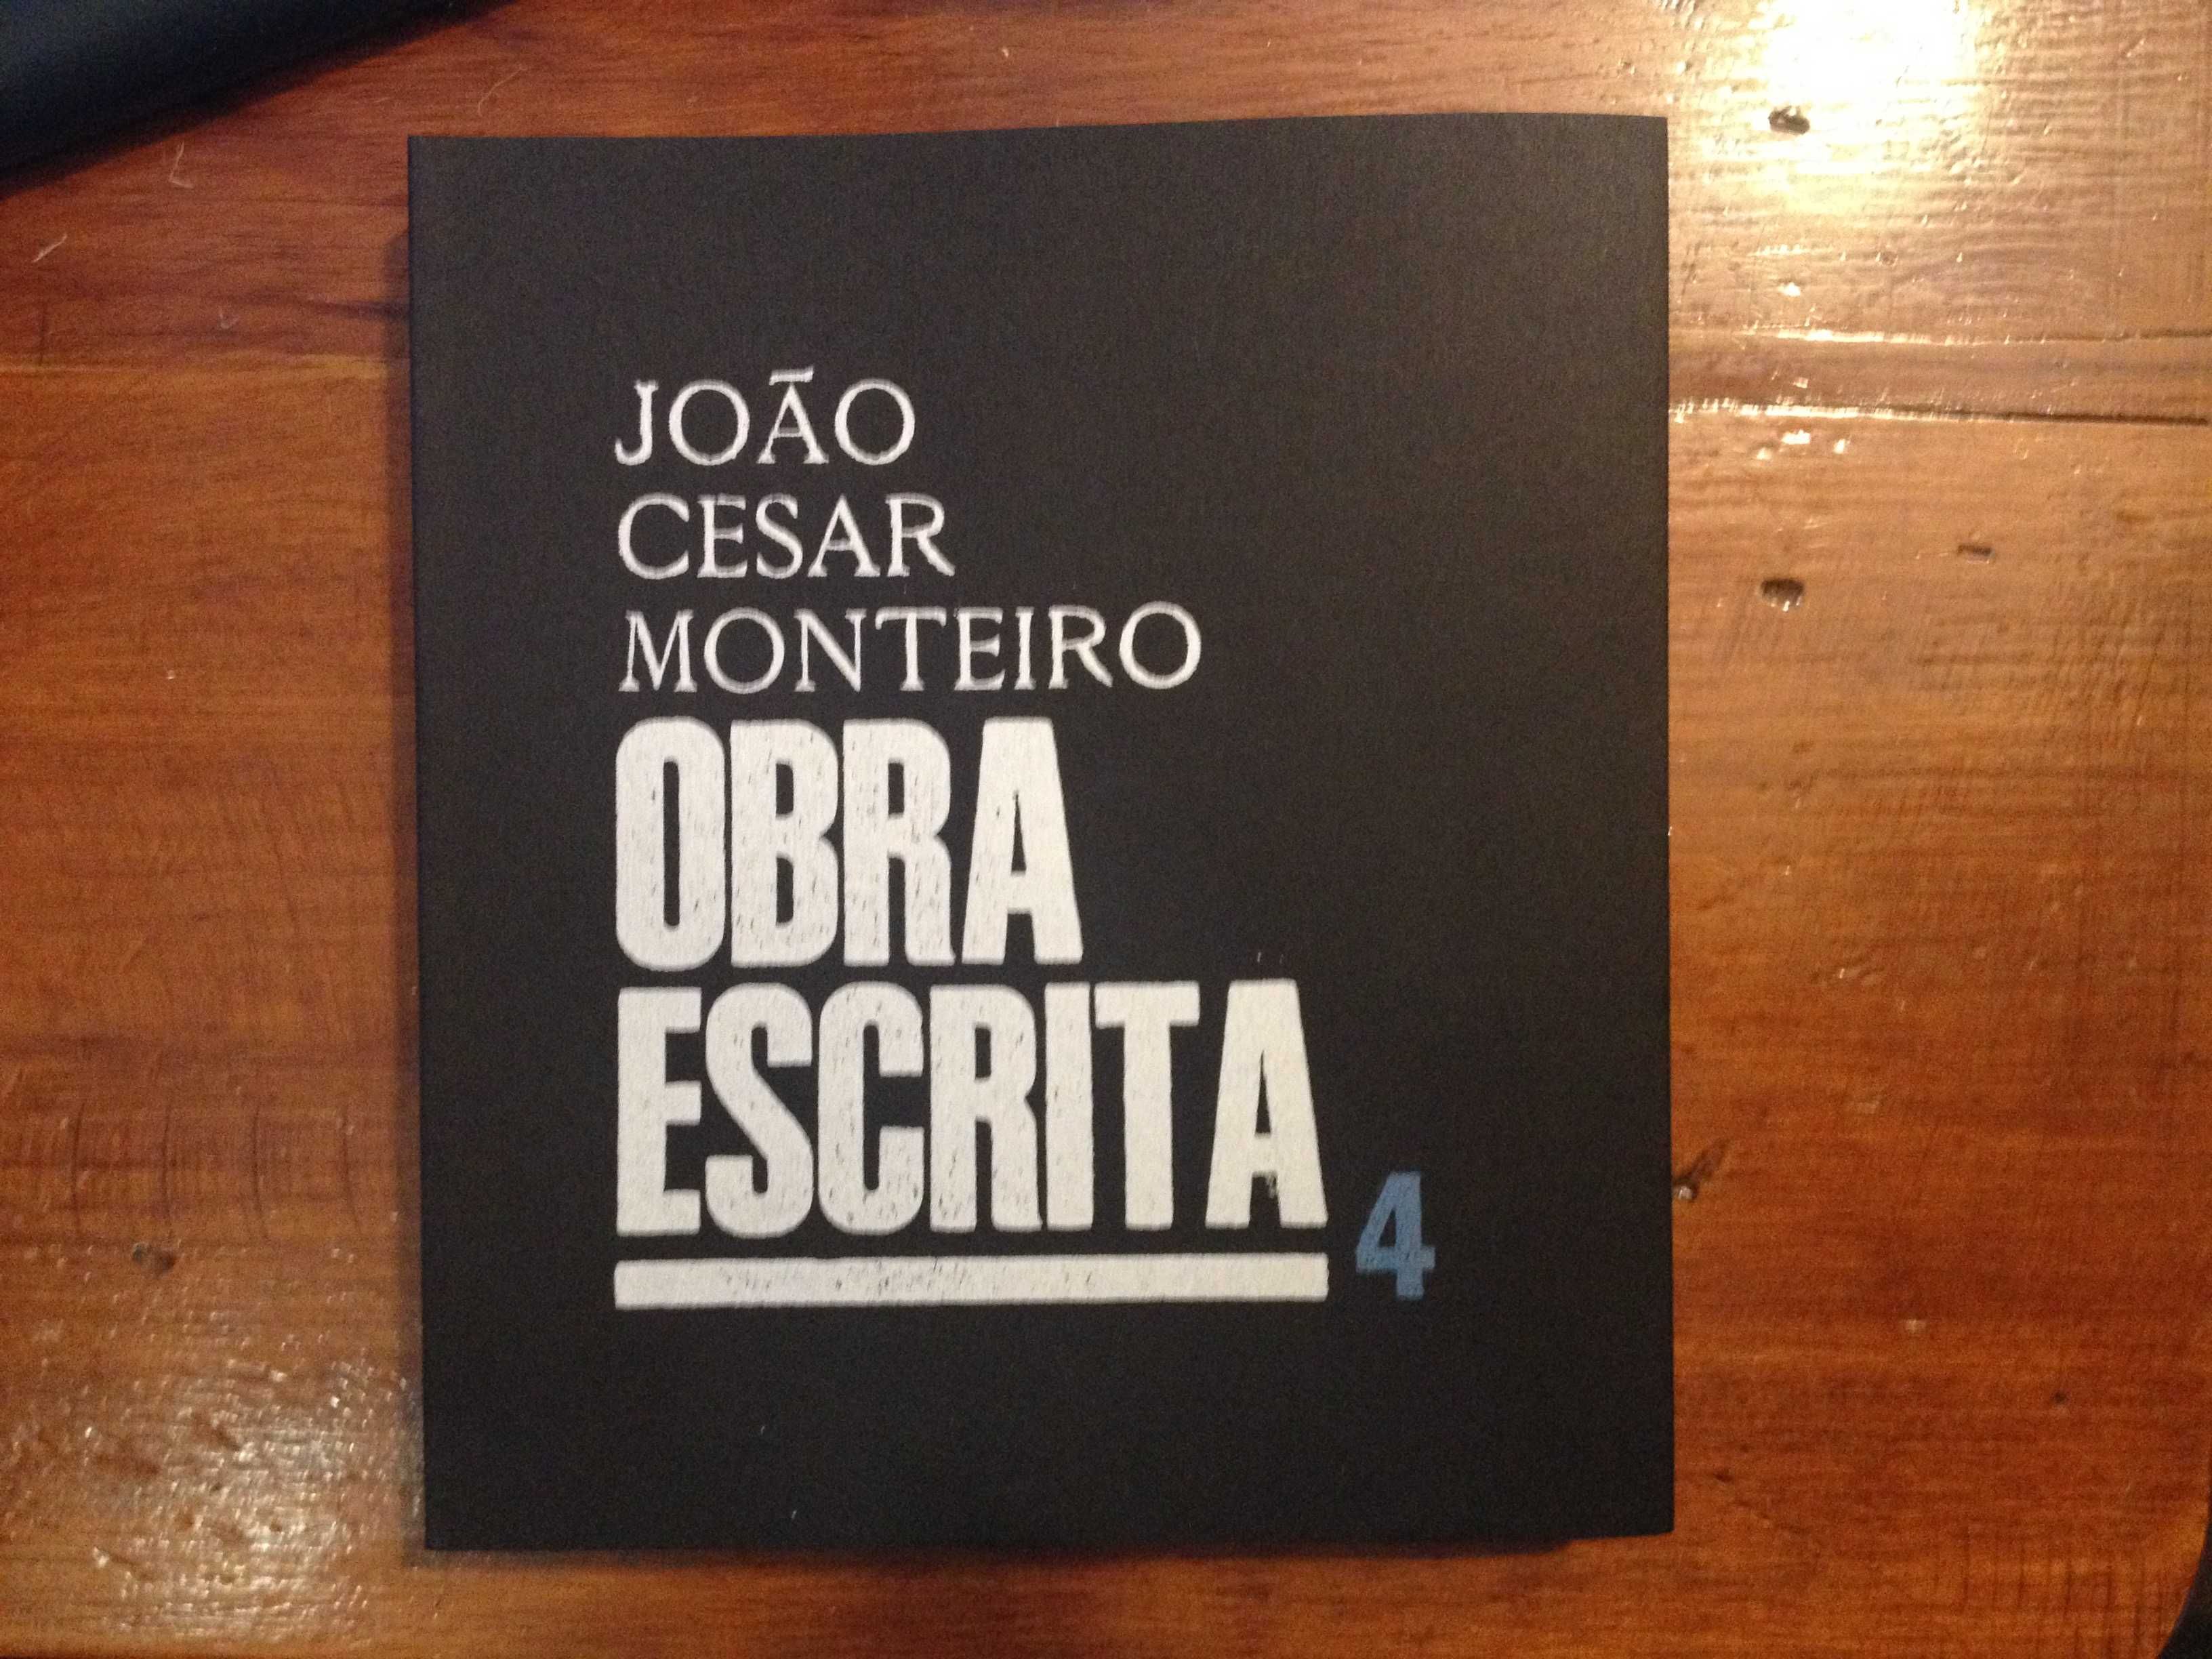 João César Monteiro - Obra escrita 4